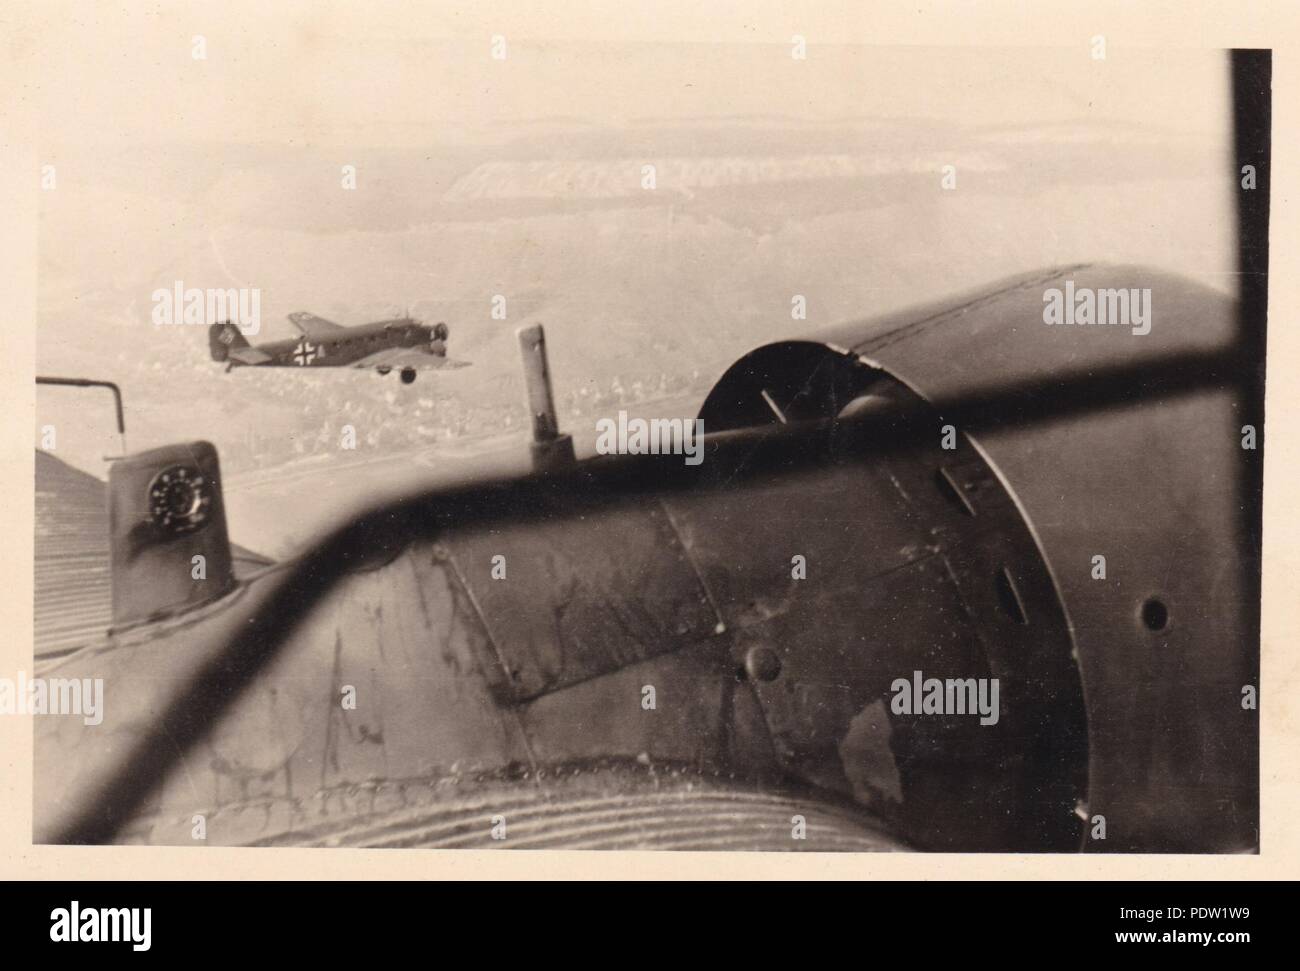 Bild aus dem Fotoalbum von Oberfeldwebel Karl gendner von 1. Staffel, Kampfgeschwader 40: Ein Luft-zu-Ansicht von Junkers Ju 52/3 m1 Z + AL 3./KGzbV 1, wie aus einer anderen Ju 52 der Einheit gesehen, während ein Flug nach Frankreich am 1. Juni 1940. Karl Gendner war ein Pilot mit 3./KGzbV 1 zu dieser Zeit. Stockfoto